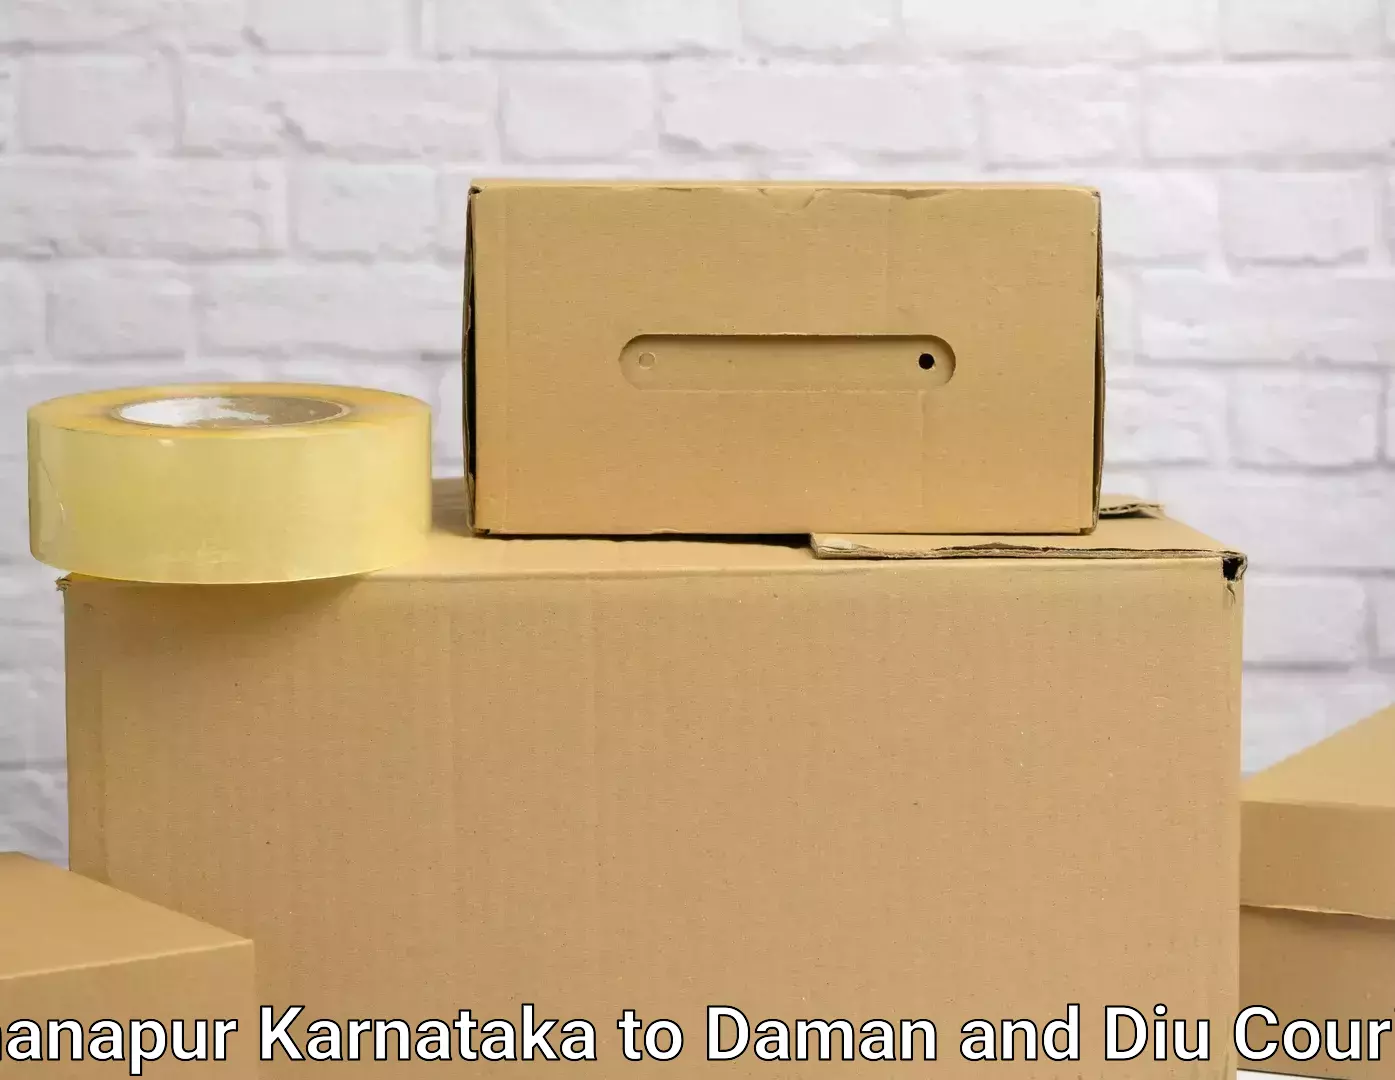 Quality household transport Khanapur Karnataka to Daman